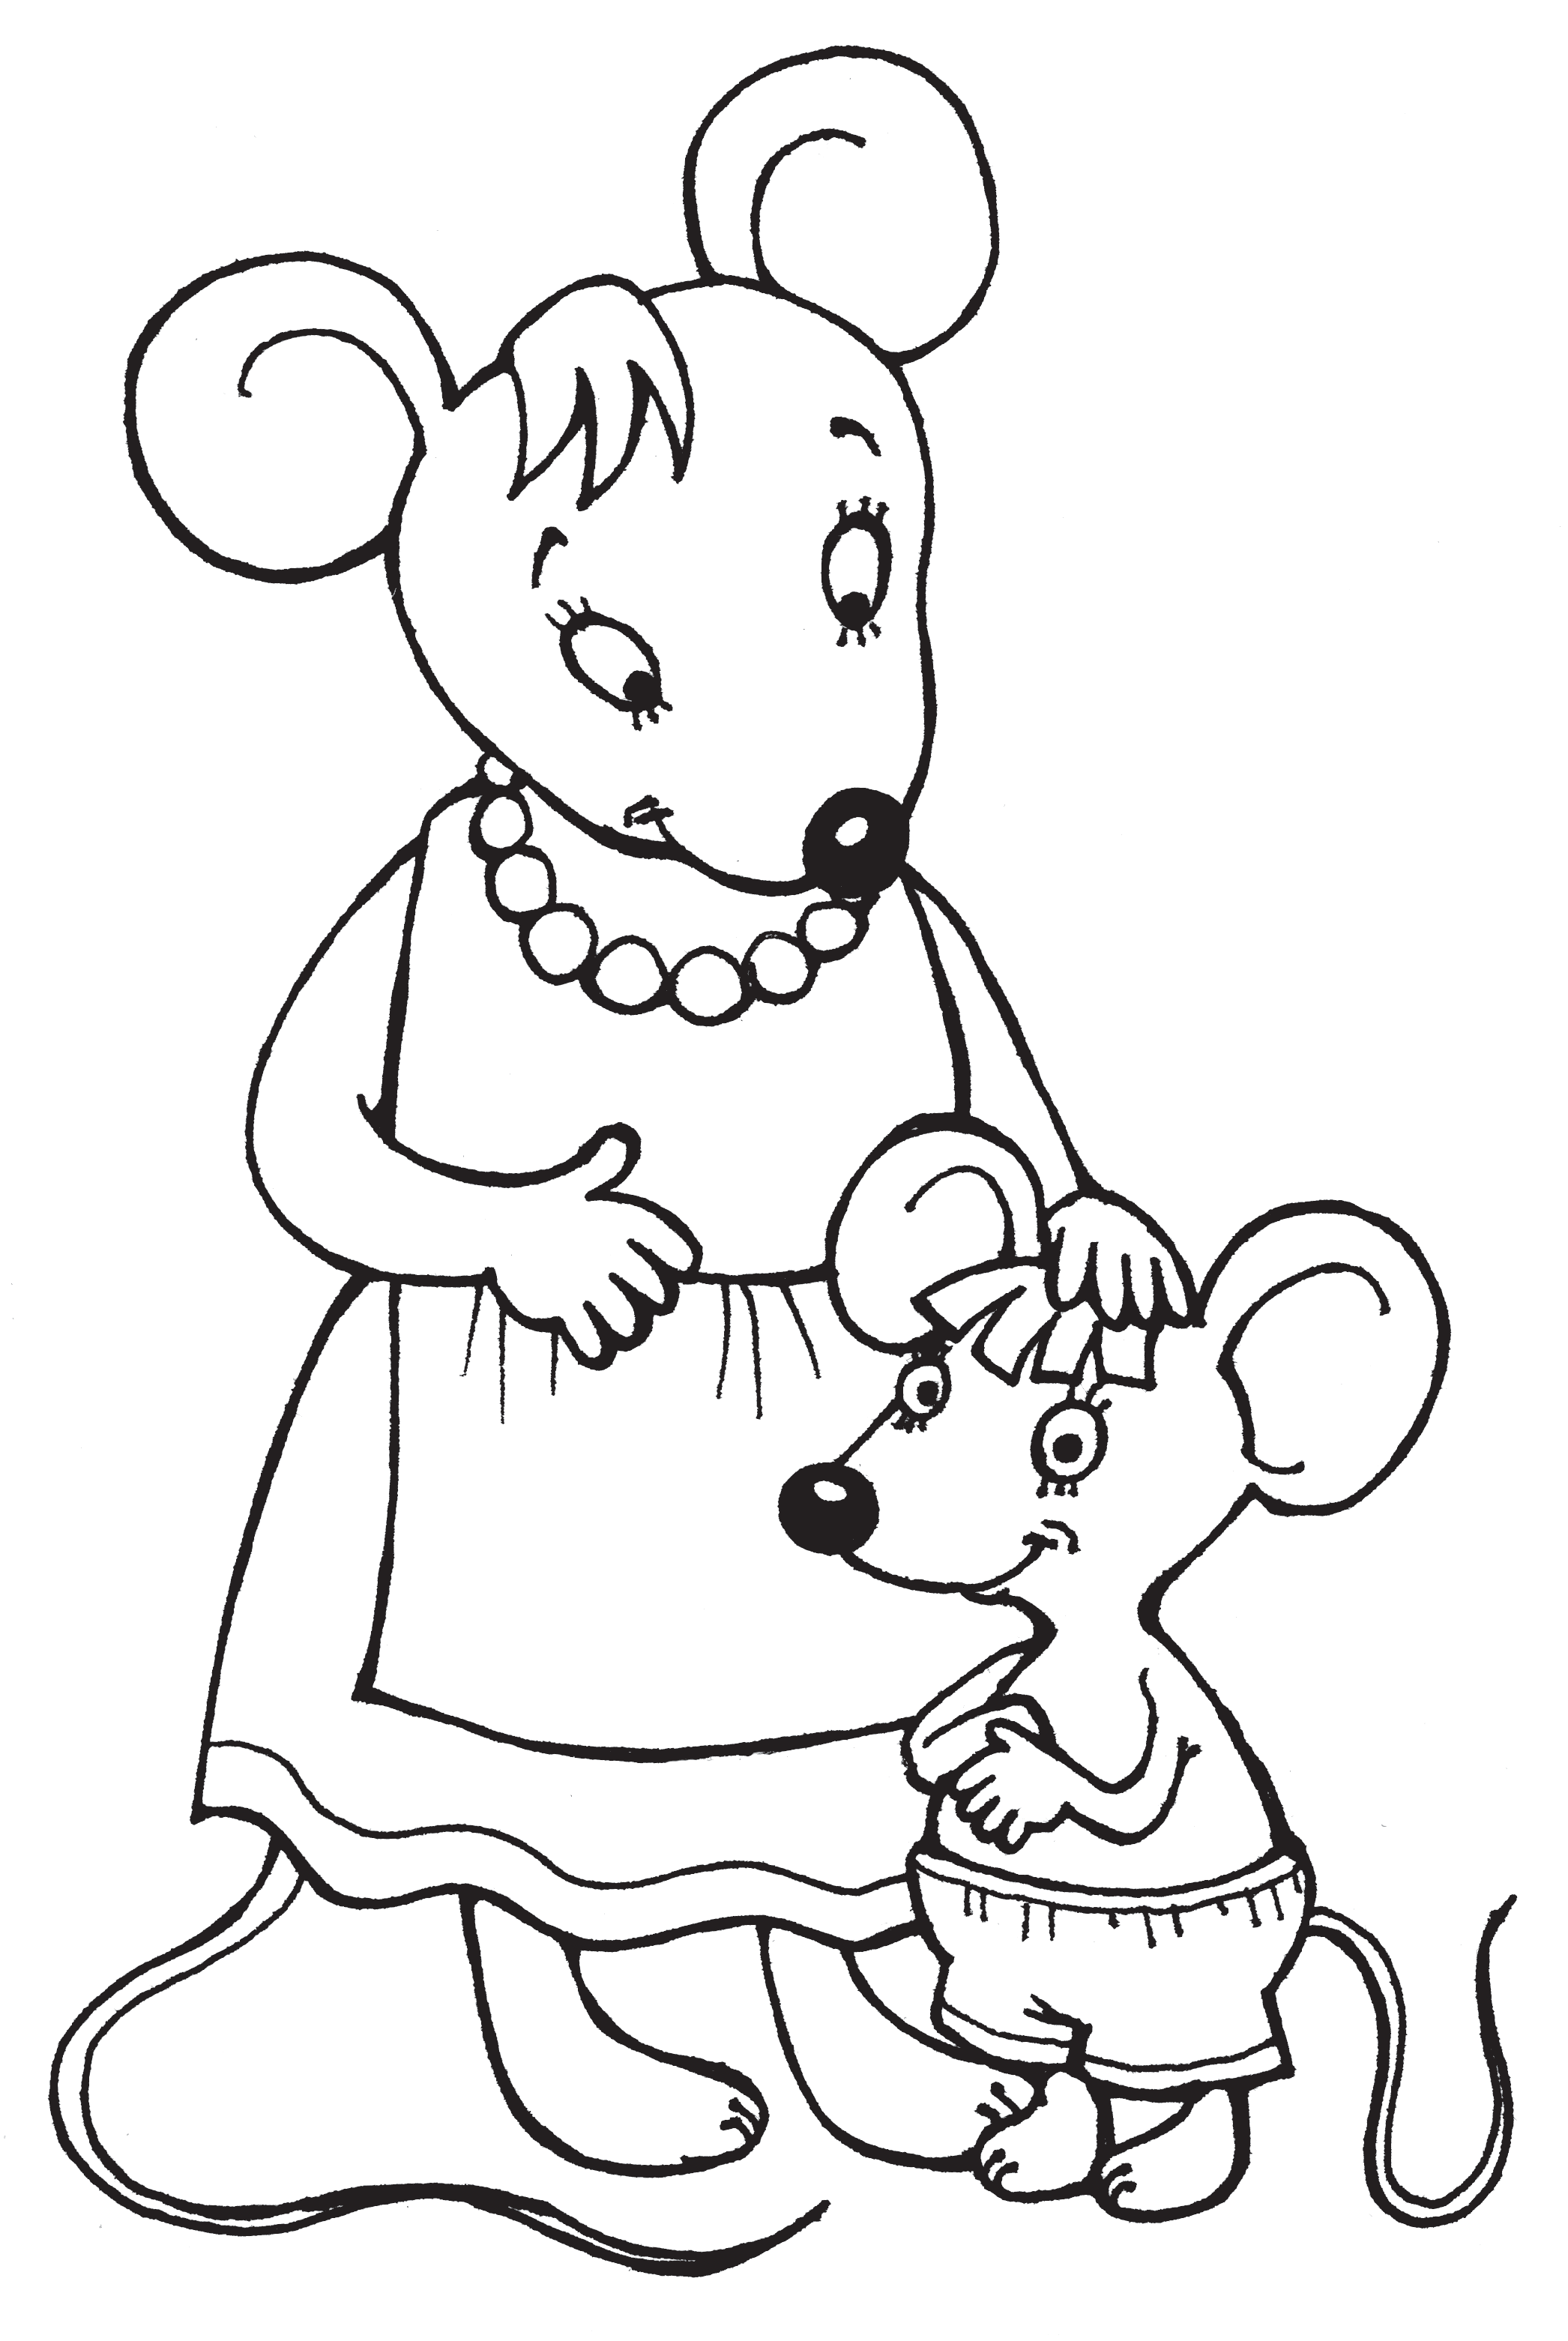 Мышка в сказке о глупом мышонке раскраска. Маршак сказка о глупом мышонке раскраска. Мышка норушка раскраска. Мышь раскраска для детей. Глупая раскраска